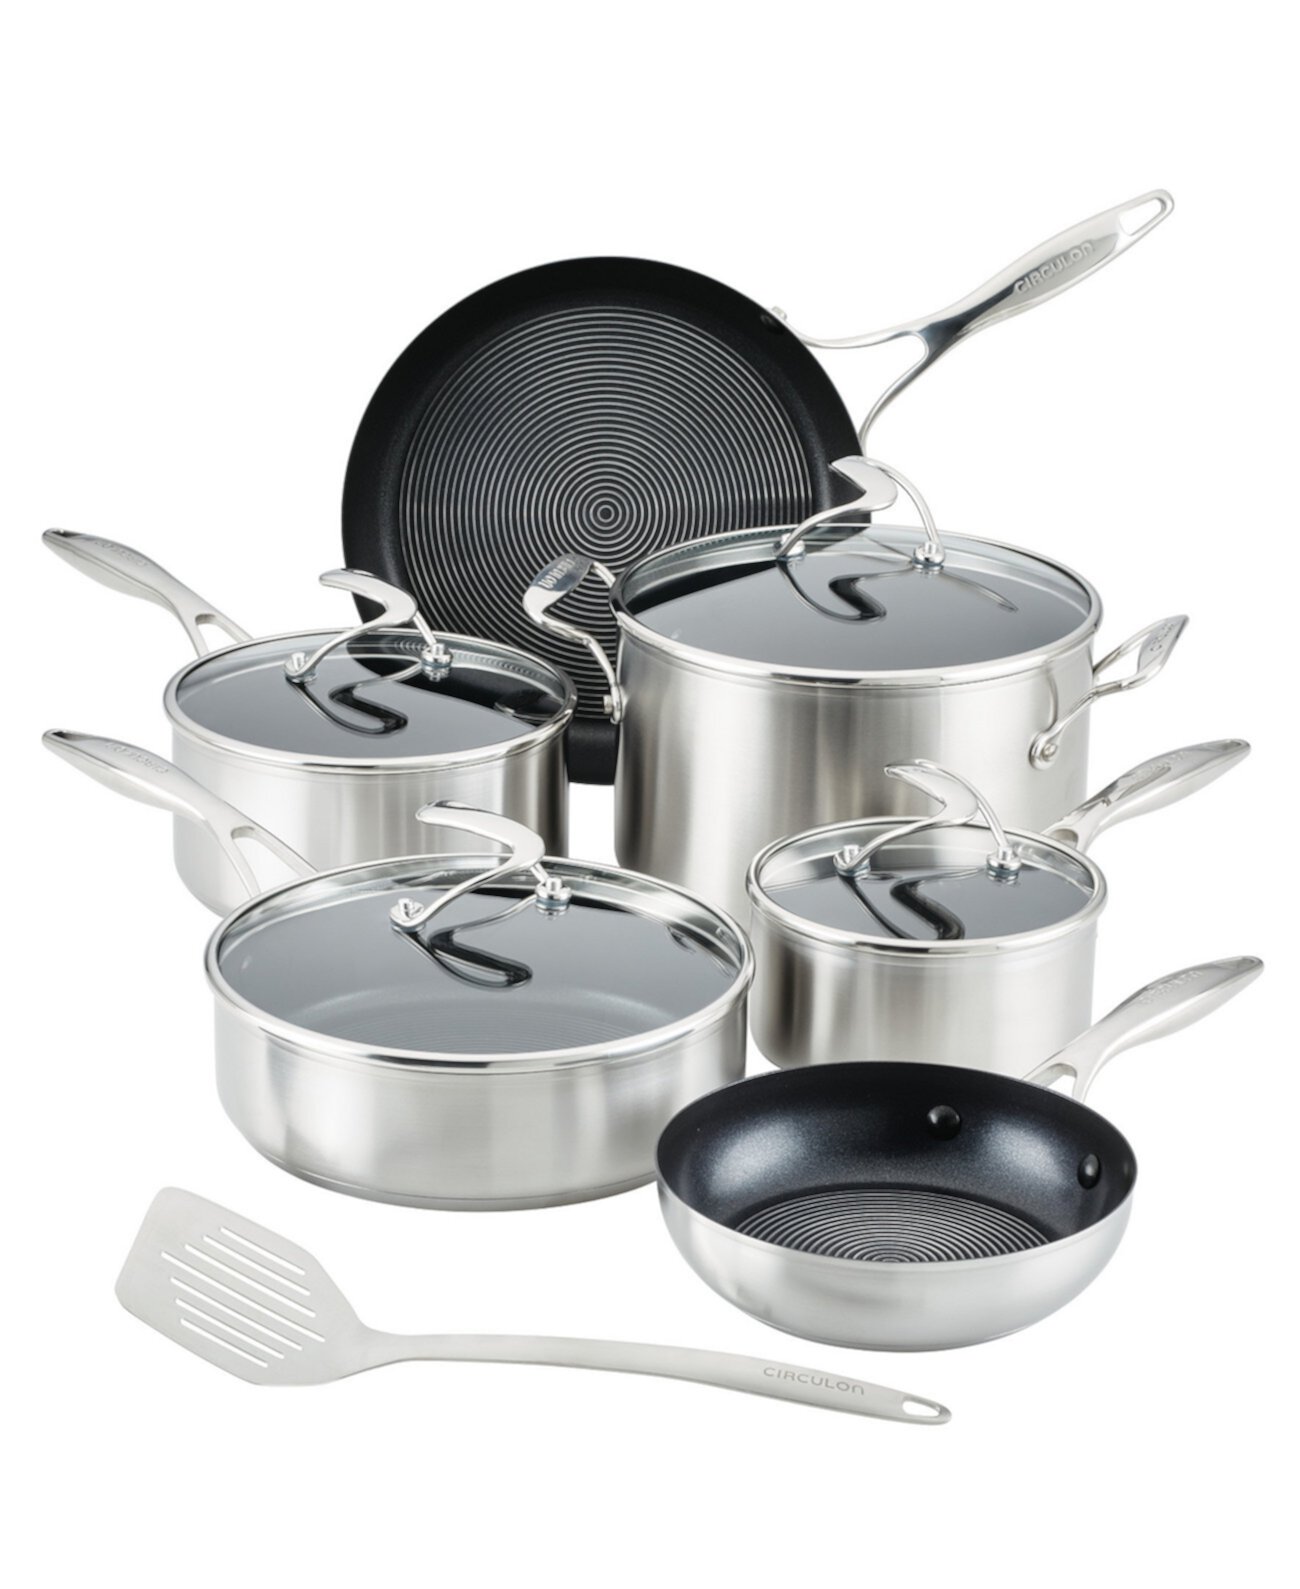 SteelShield S-Series из нержавеющей стали, кастрюли и сковороды с антипригарным покрытием Набор посуды с дополнительной посудой, 10 предметов, серебристый Circulon